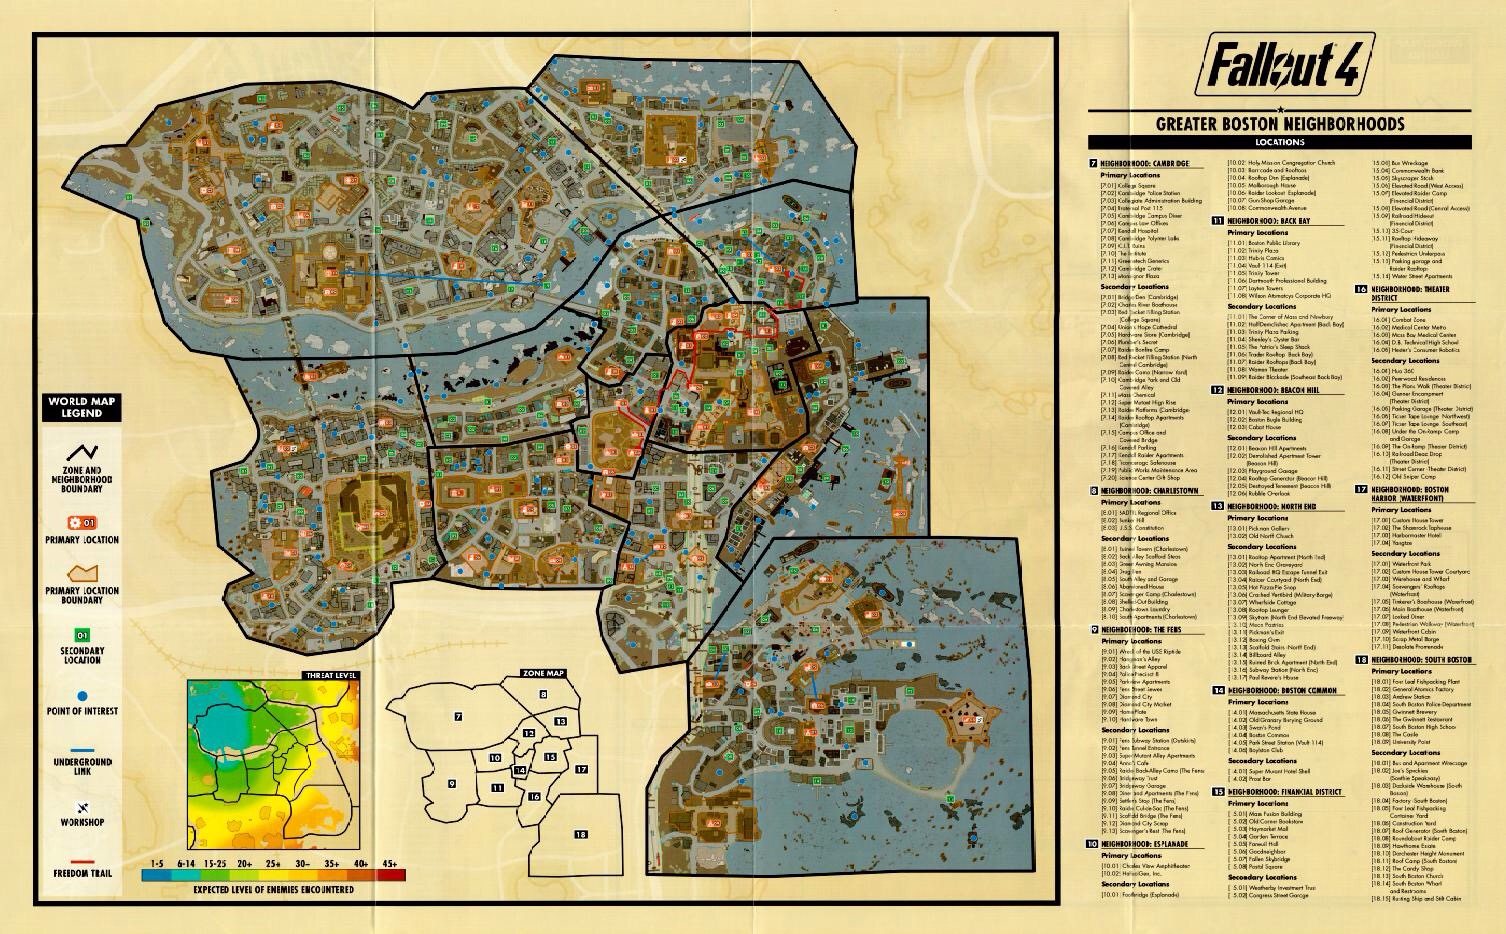 Fallout 4 руководство по тайным операциям сша на карте фото 56